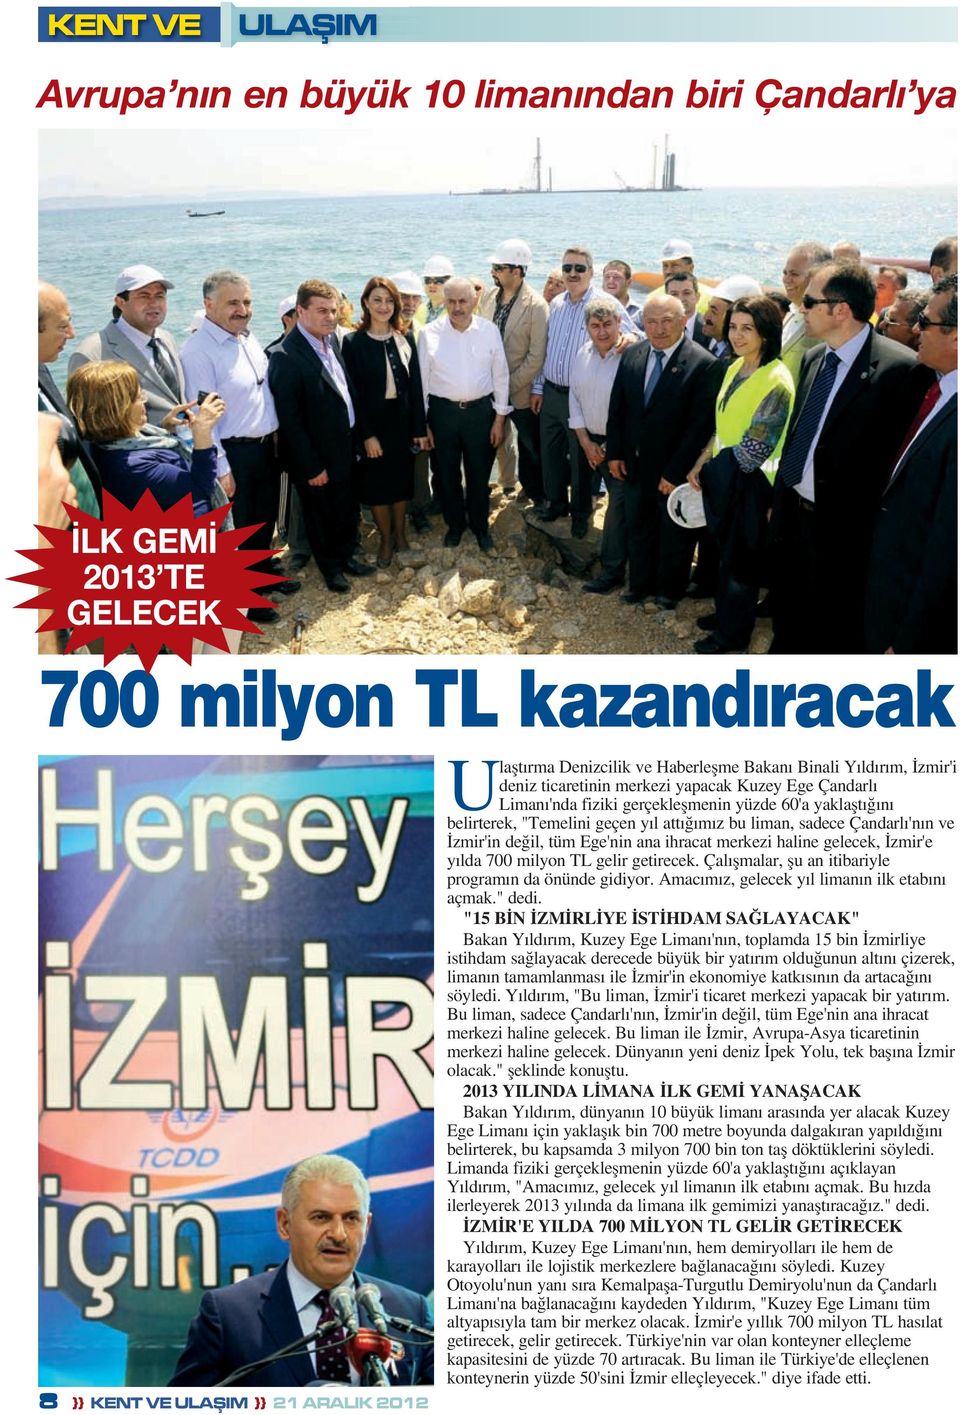 Çandarlı'nın ve İzmir'in değil, tüm Ege'nin ana ihracat merkezi haline gelecek, İzmir'e yılda 700 milyon TL gelir getirecek. Çalışmalar, şu an itibariyle programın da önünde gidiyor.